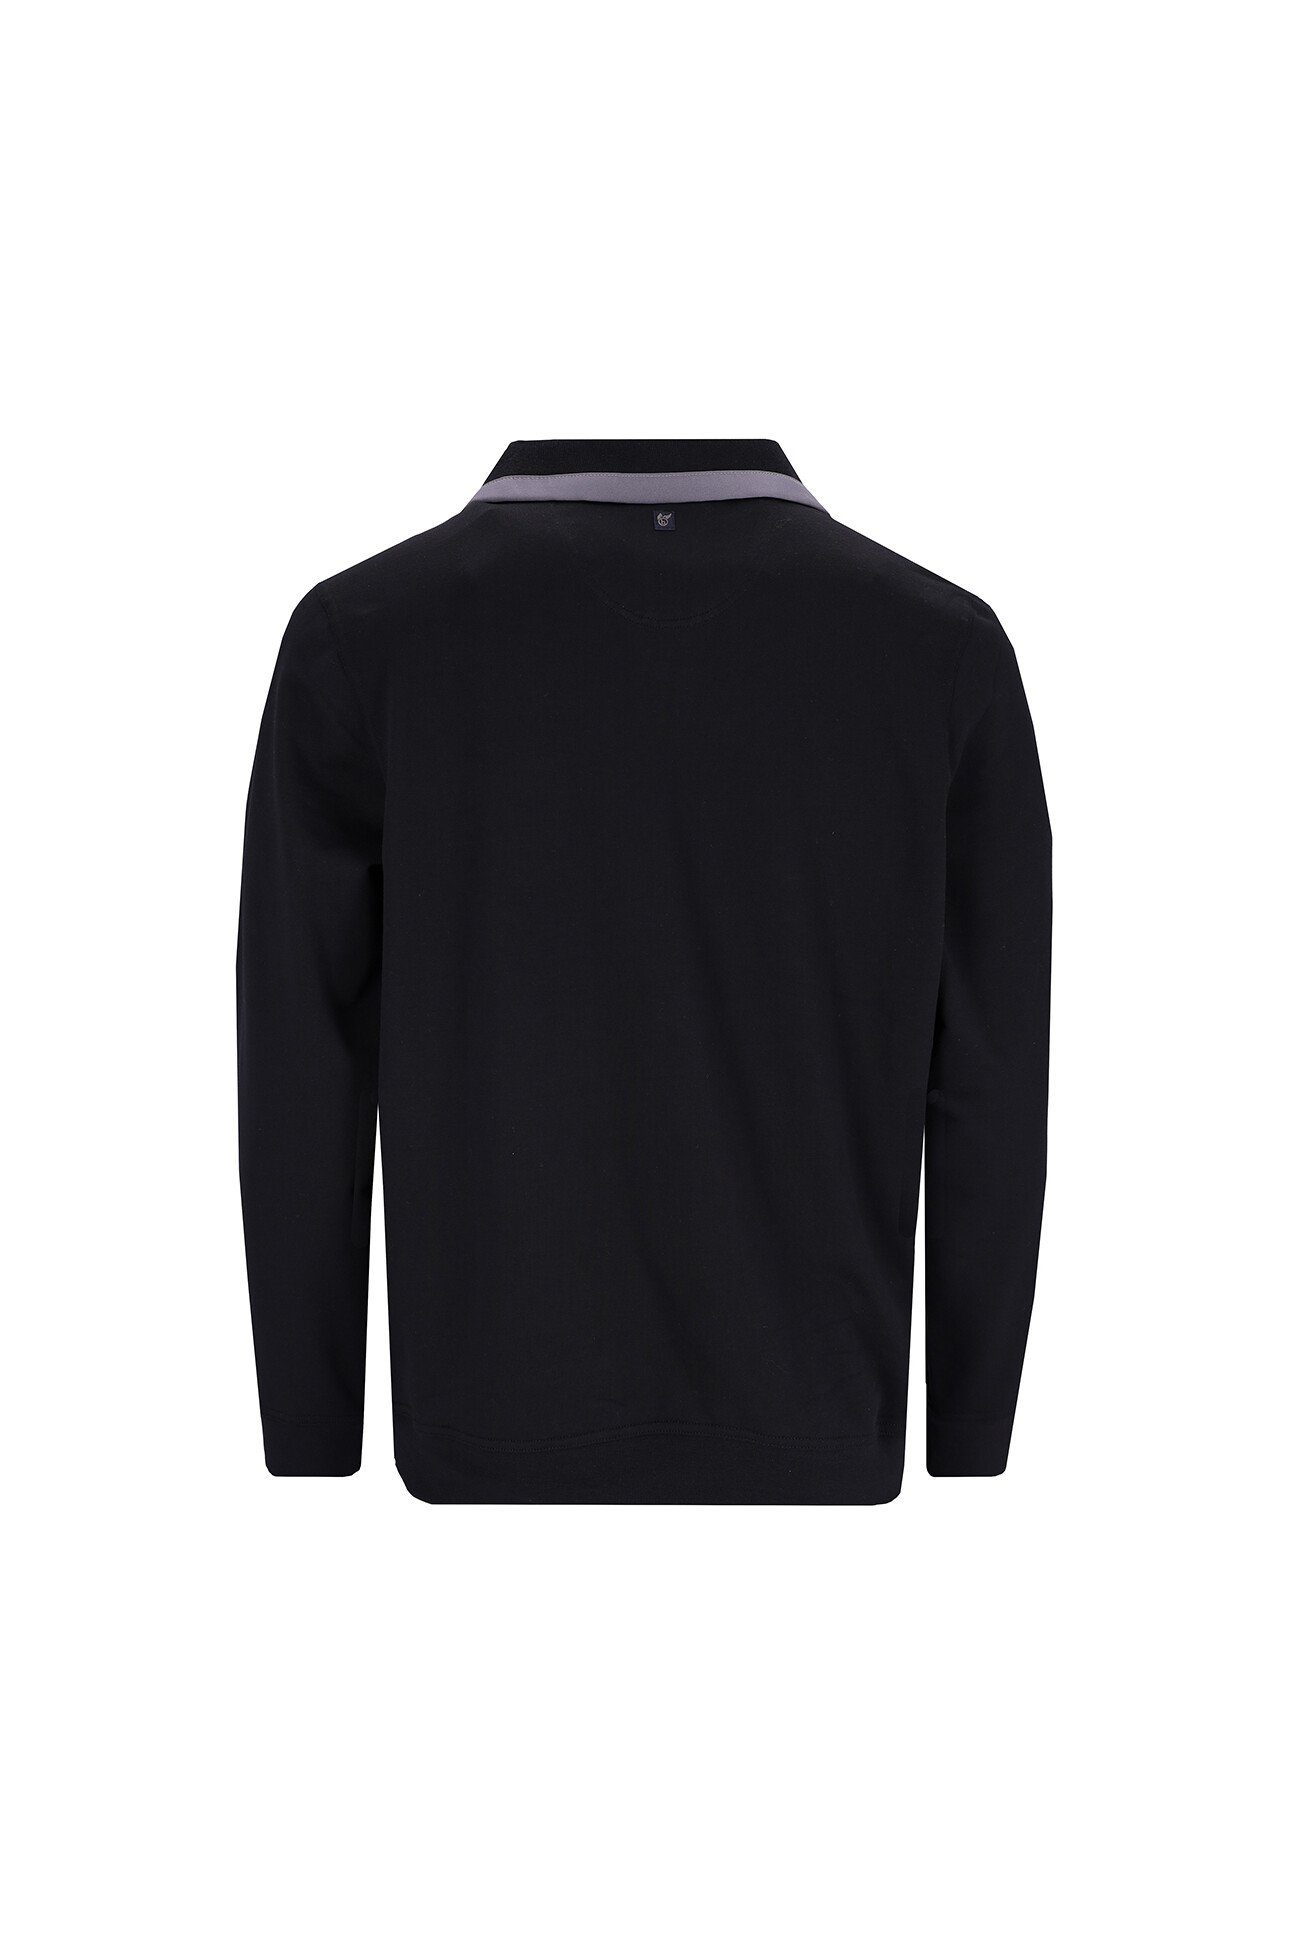 Hajo schwarz Sweatshirt Fresh-Premiumqualität, hautsympathisch, atmungsaktiv Stay 20023